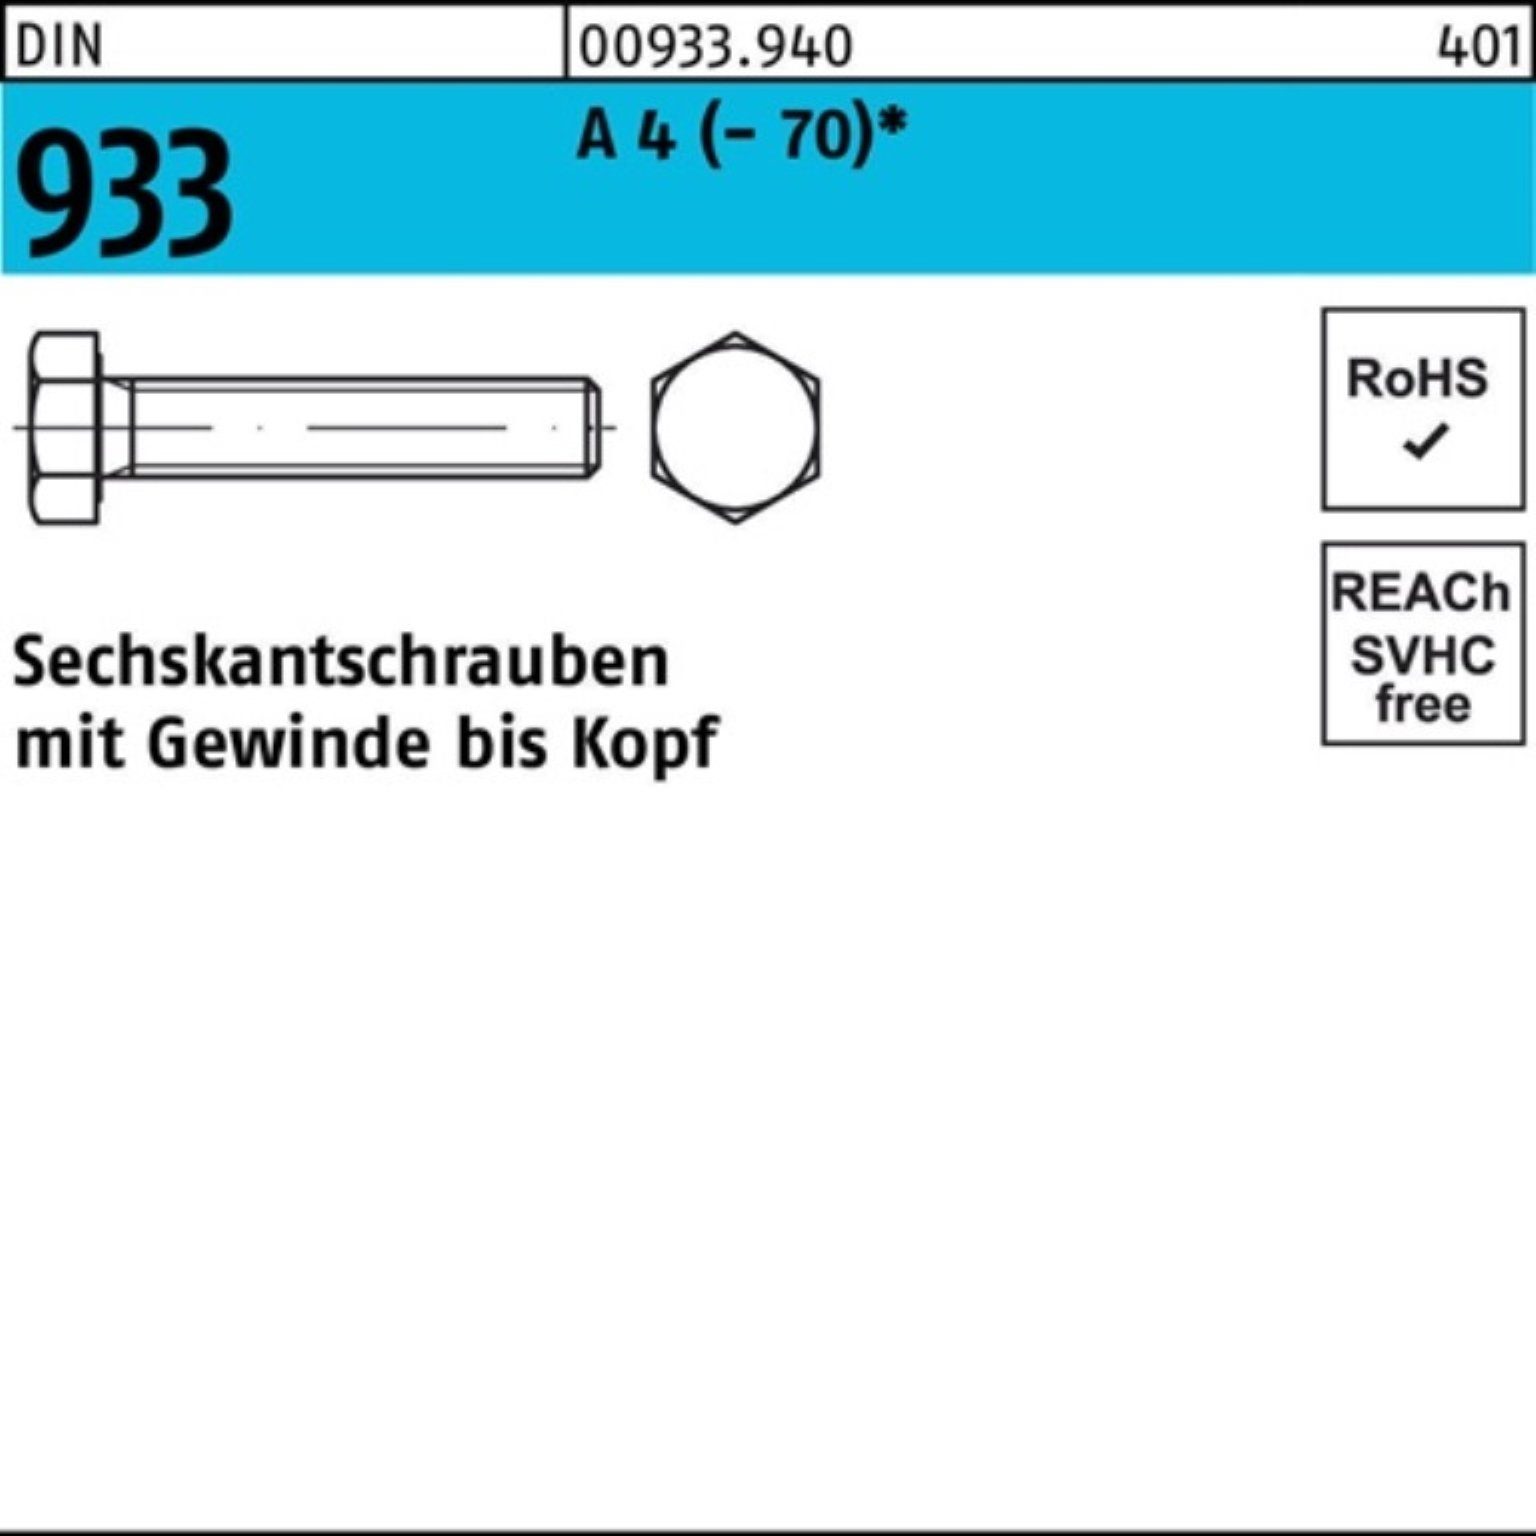 VG Sechskantschraube 45 DIN (70) A 1 DI Reyher Pack Stück M24x Sechskantschraube 933 4 100er